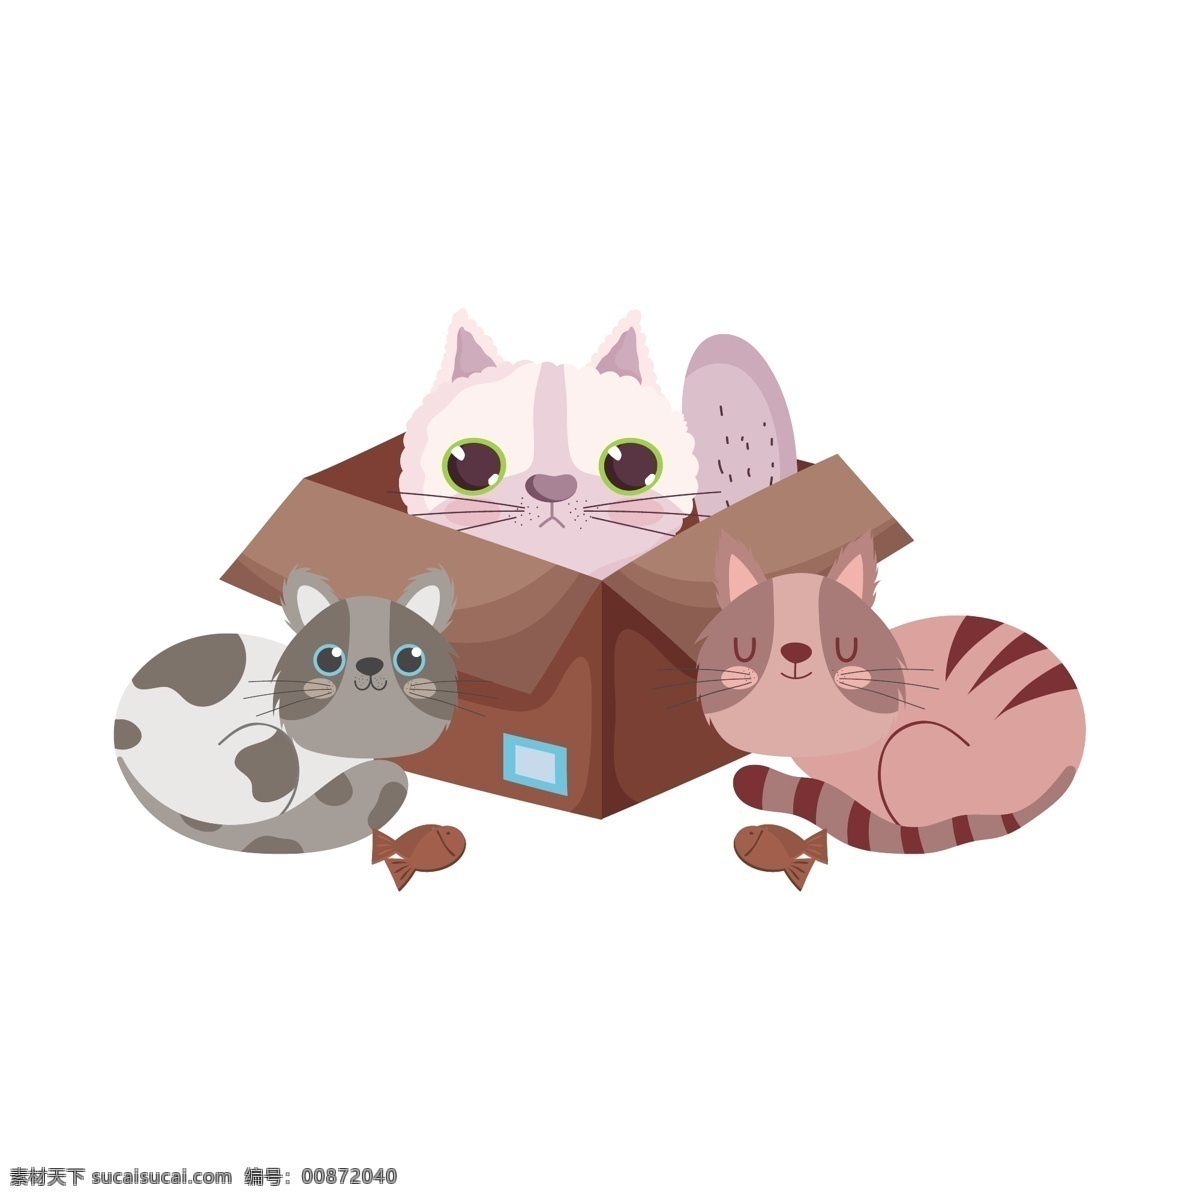 手绘 卡通 猫 手绘卡通猫 卡通猫 动物 可爱 卡哇伊 动物印花 动物图案 动物素材 小猫 卡通动物生物 卡通设计